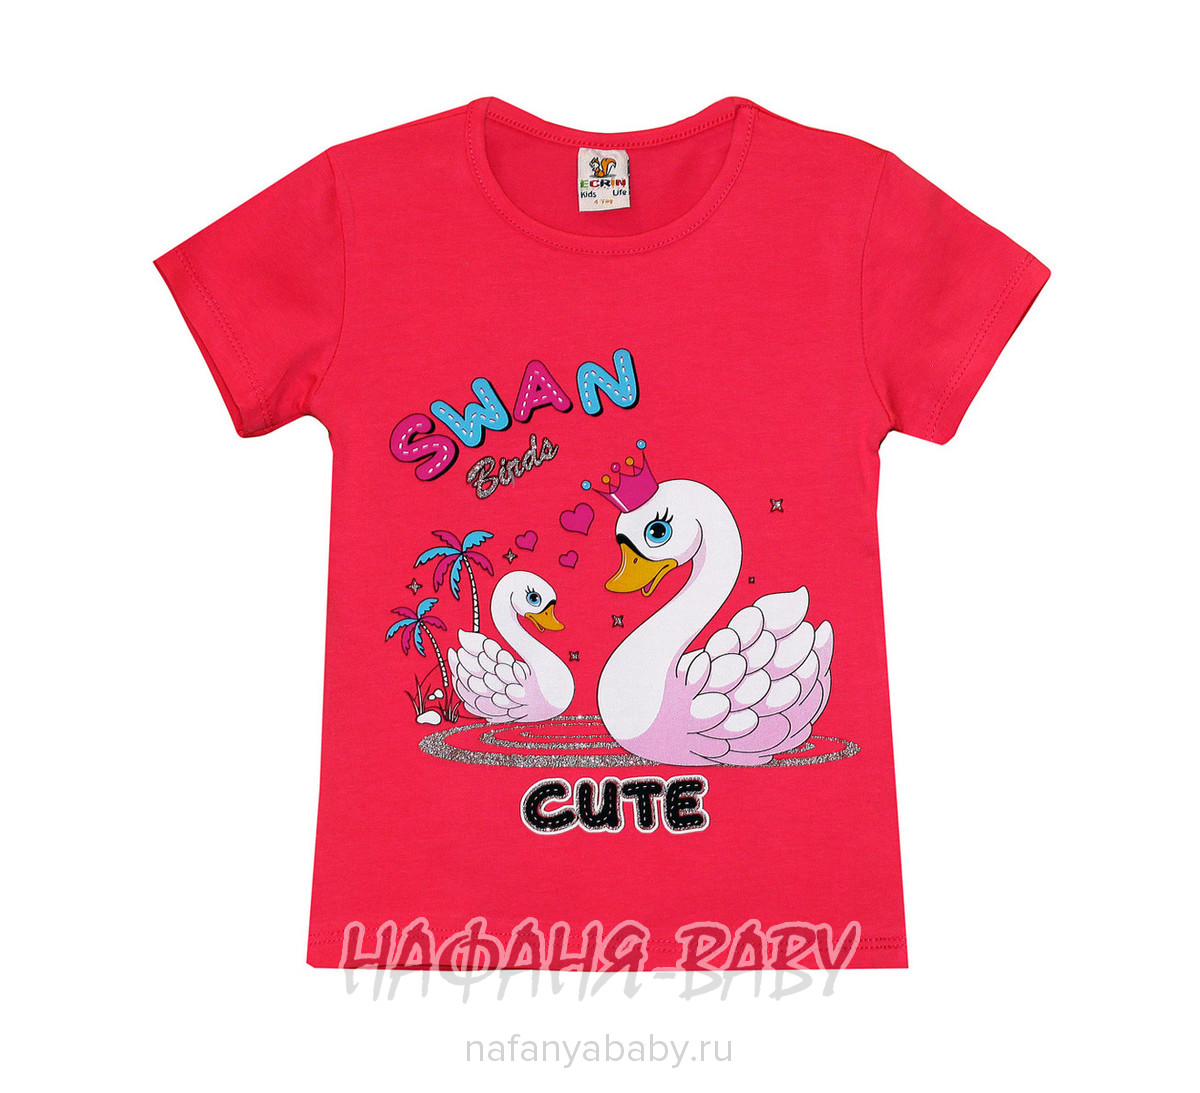 Детская футболка ECRIN арт: 2855, 1-4 года, оптом Турция